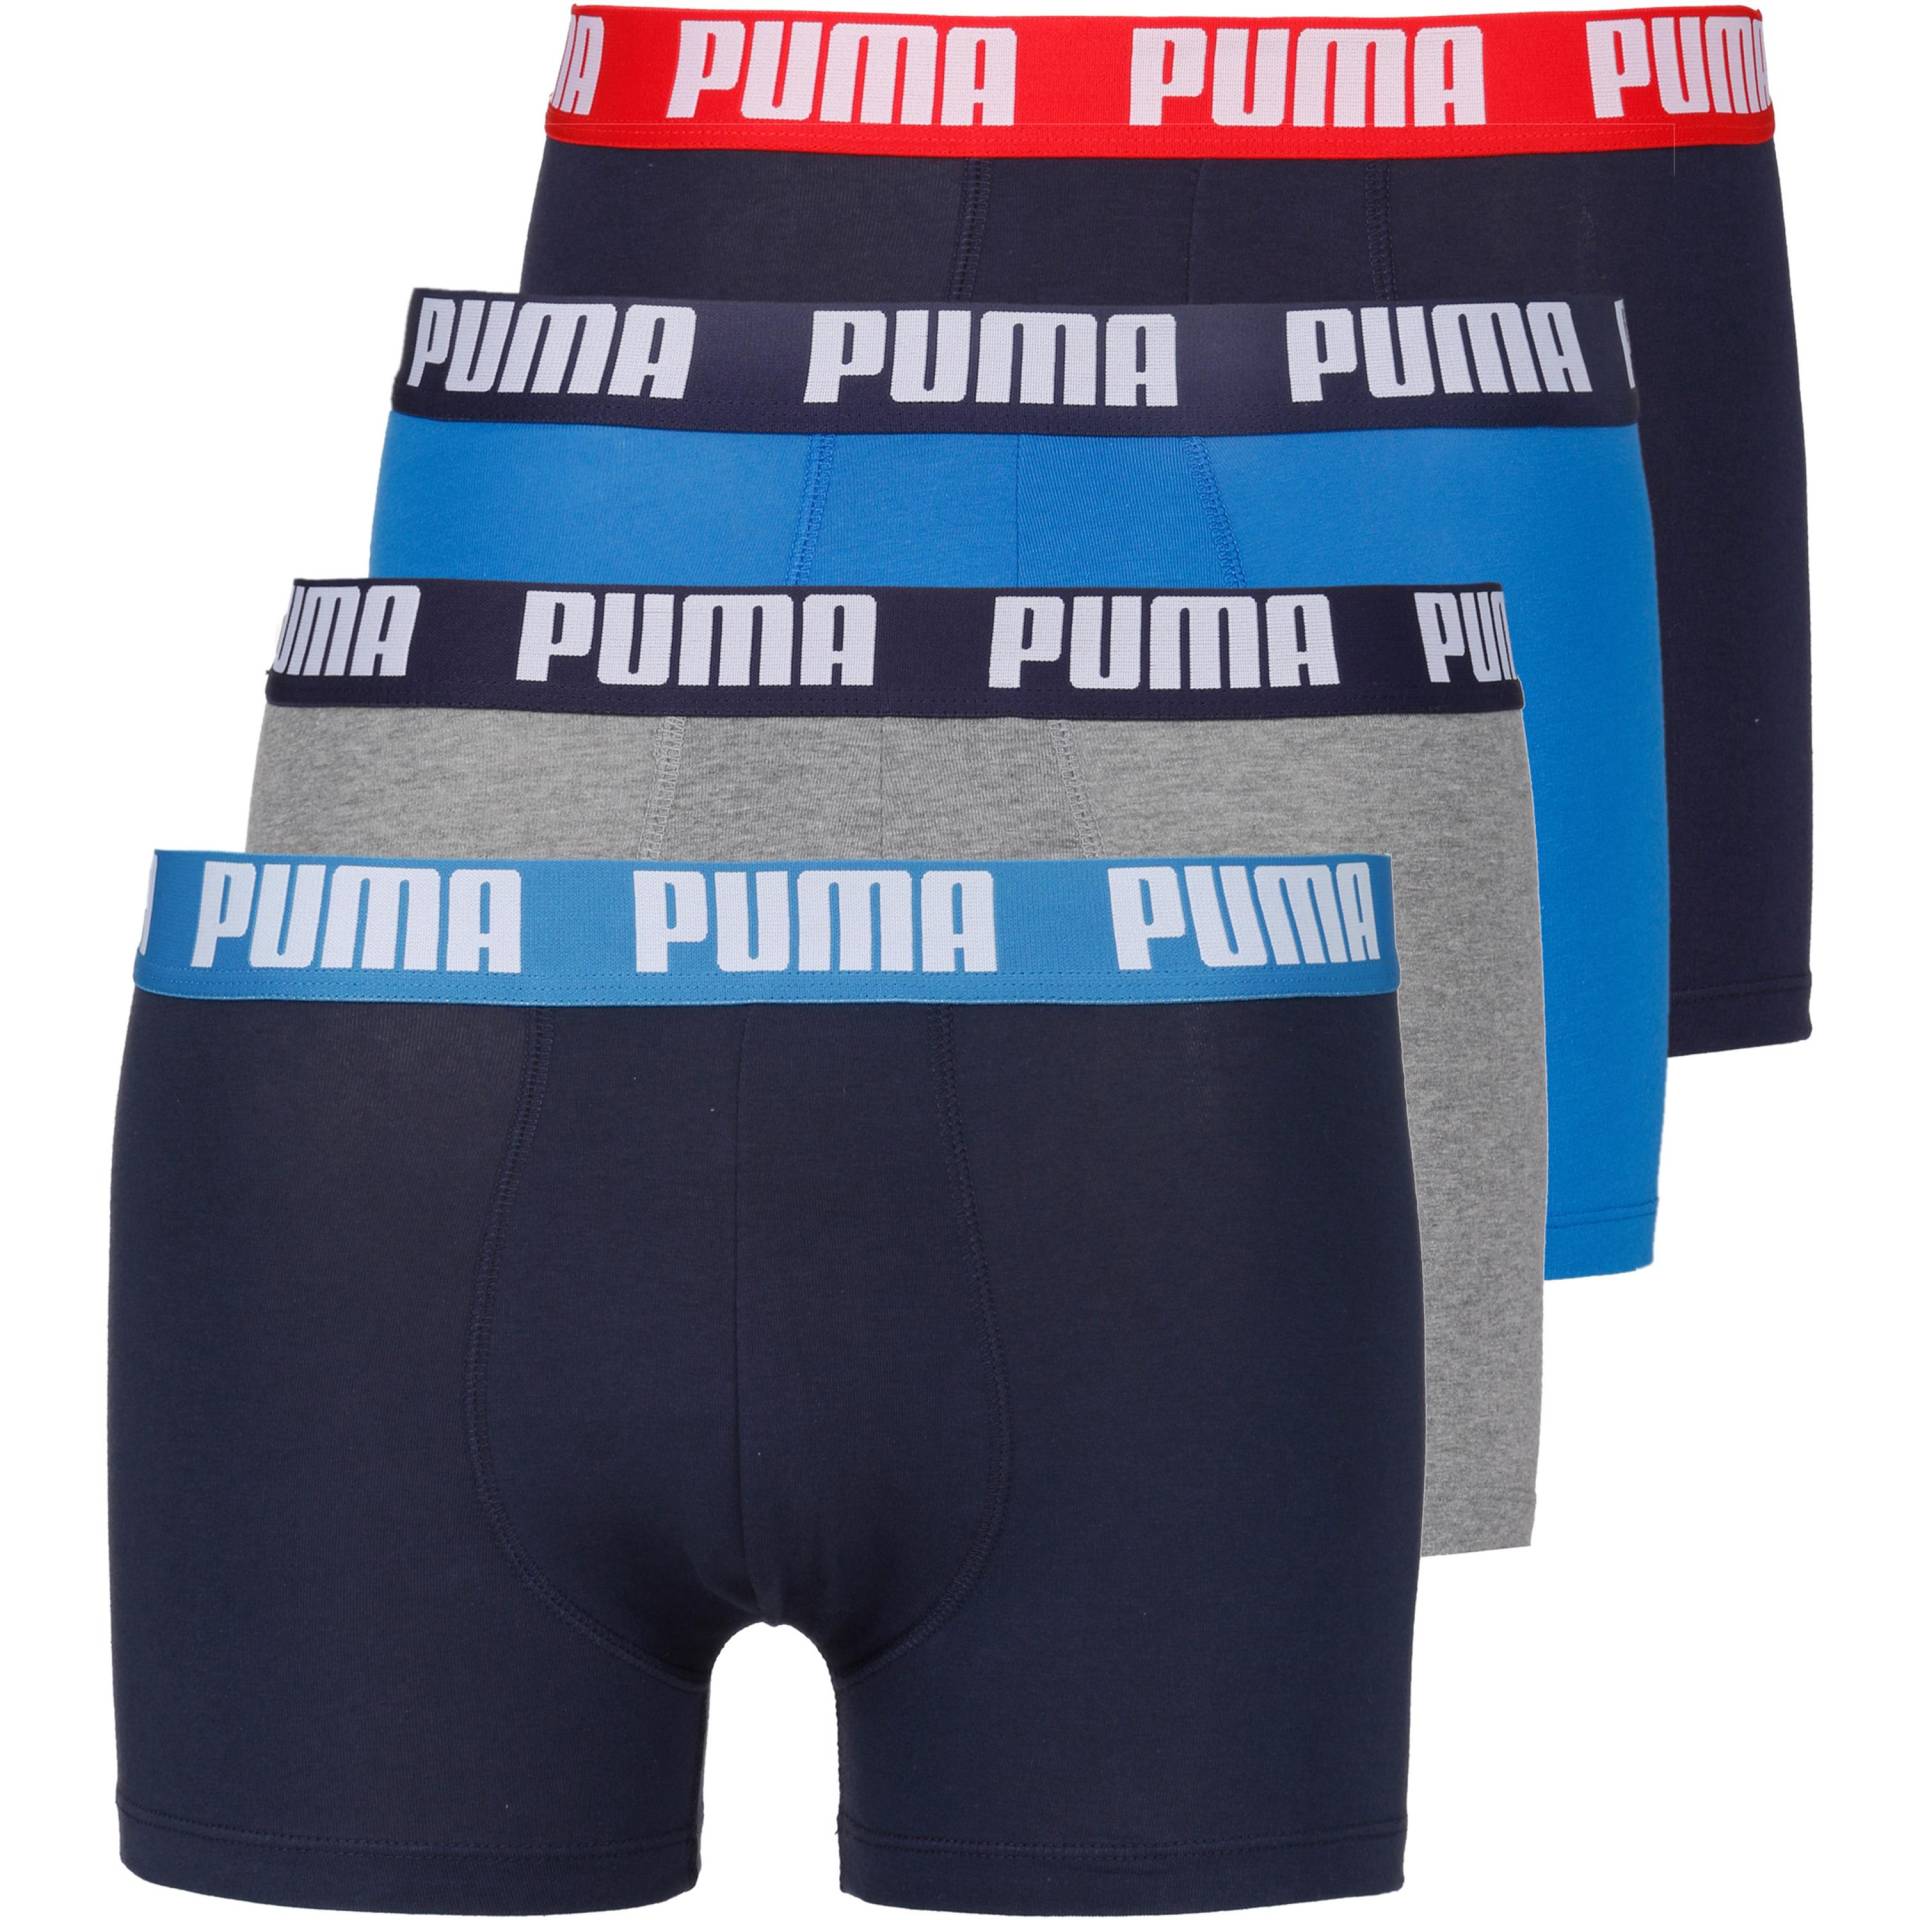 PUMA Unterhose Herren von Puma